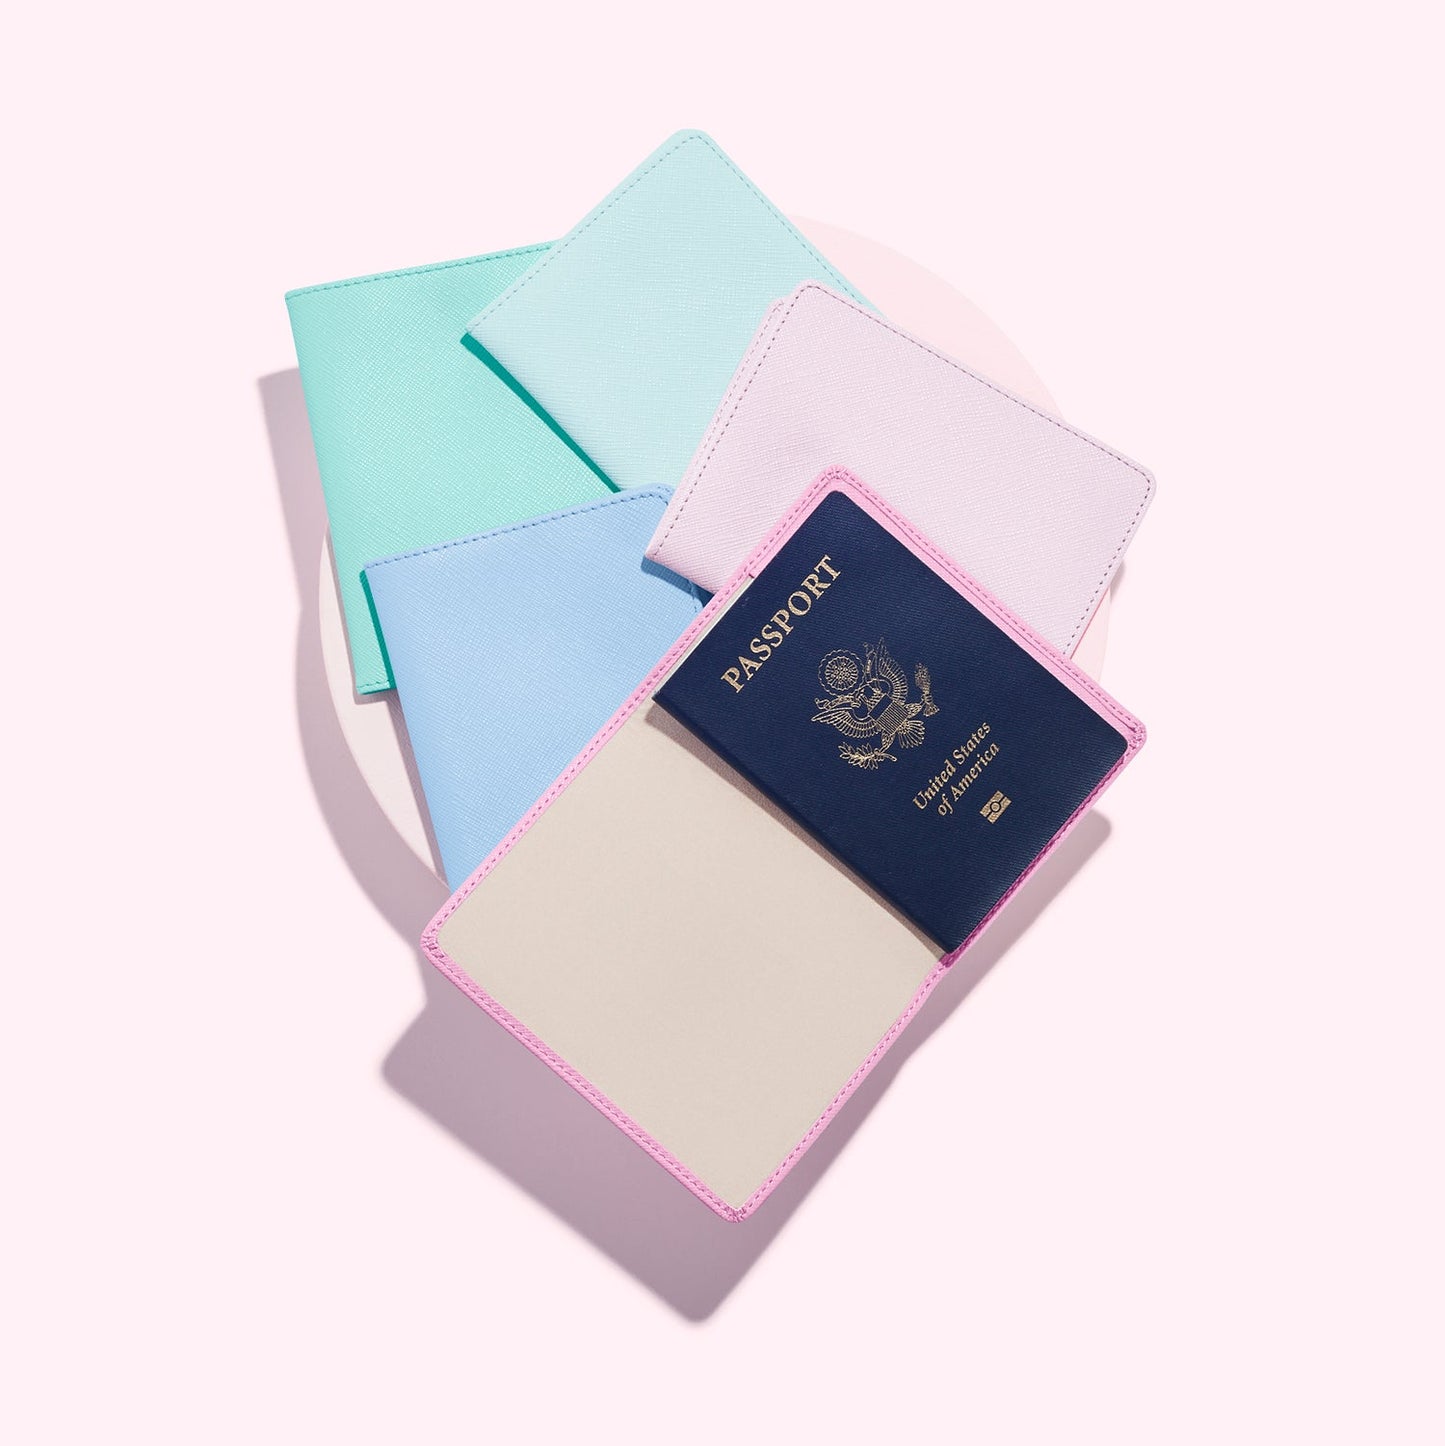 Personalized Passport Cover – Charleston Gardens